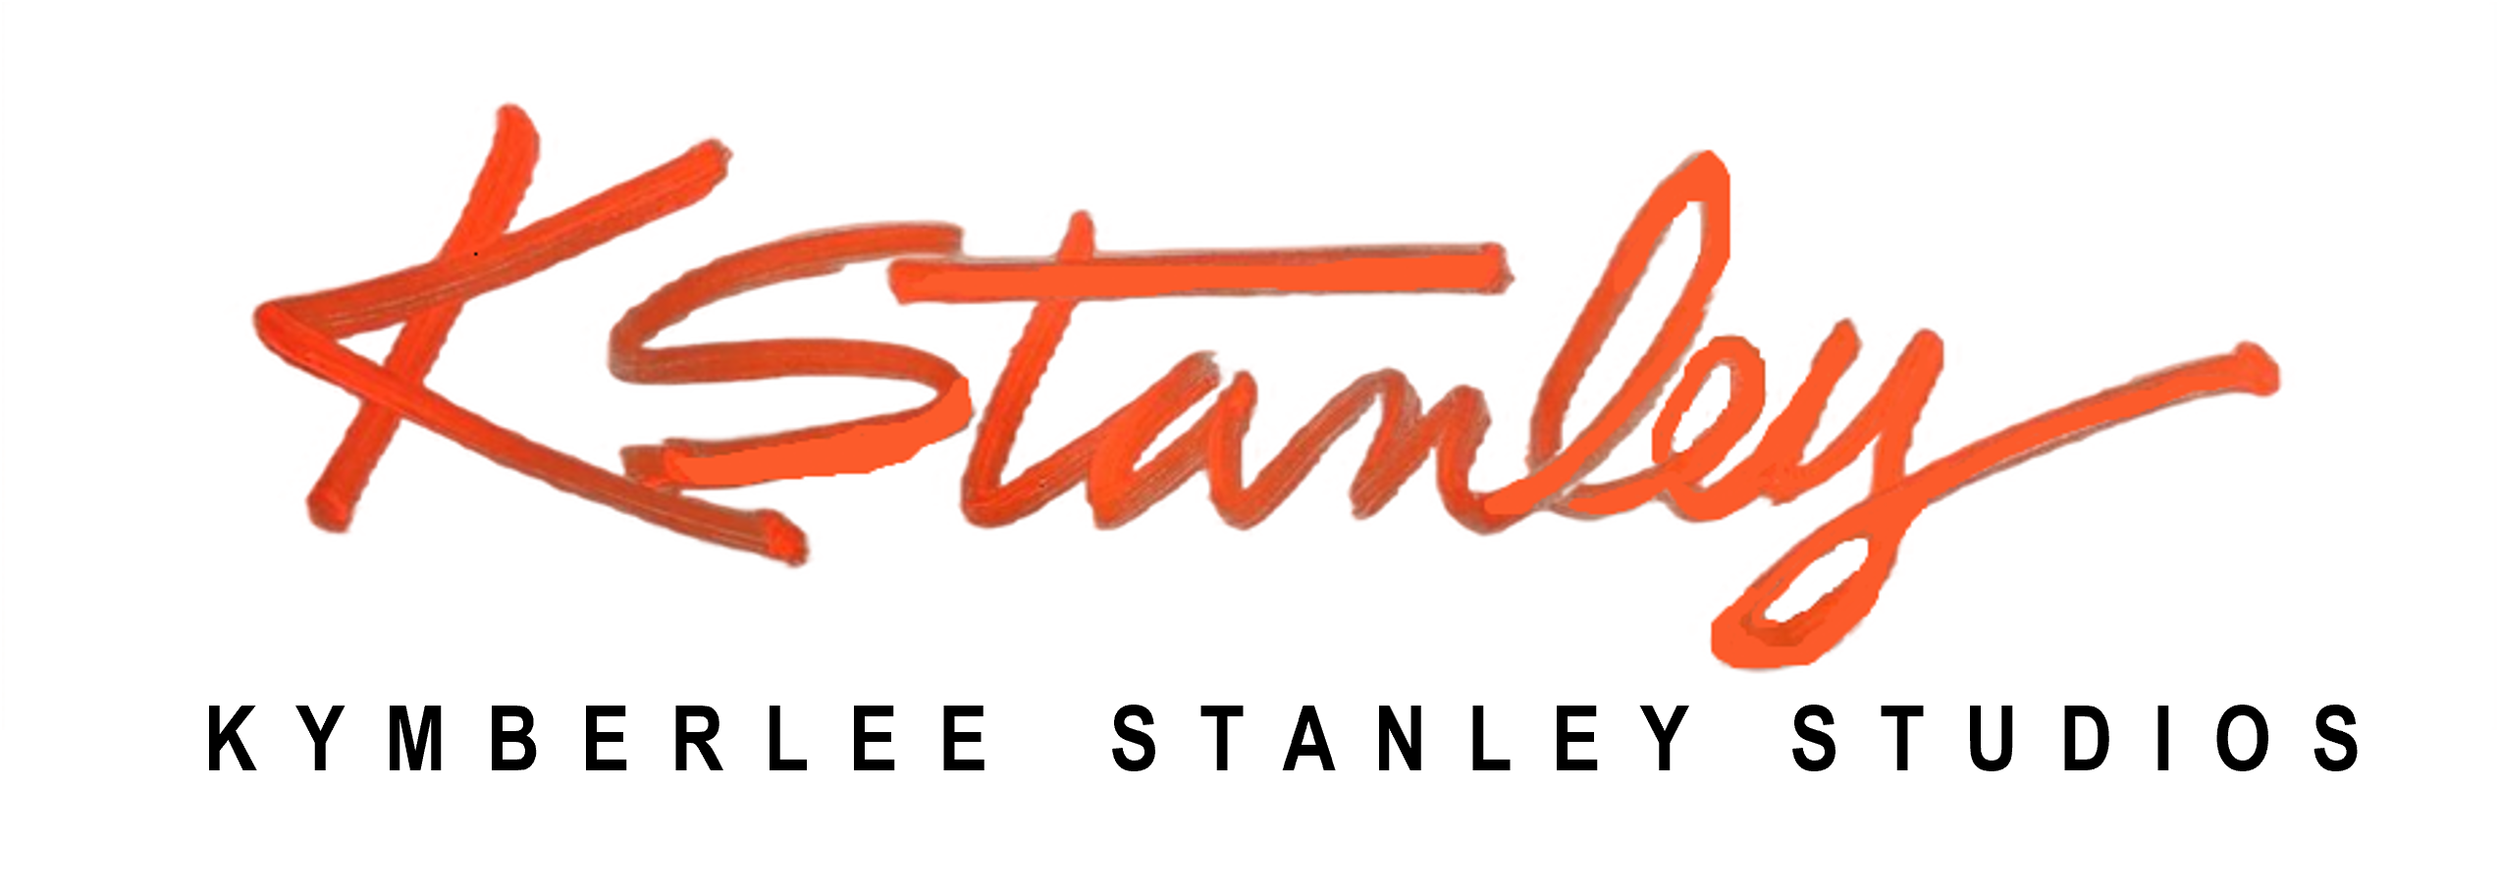 Kymberlee Stanley Studios